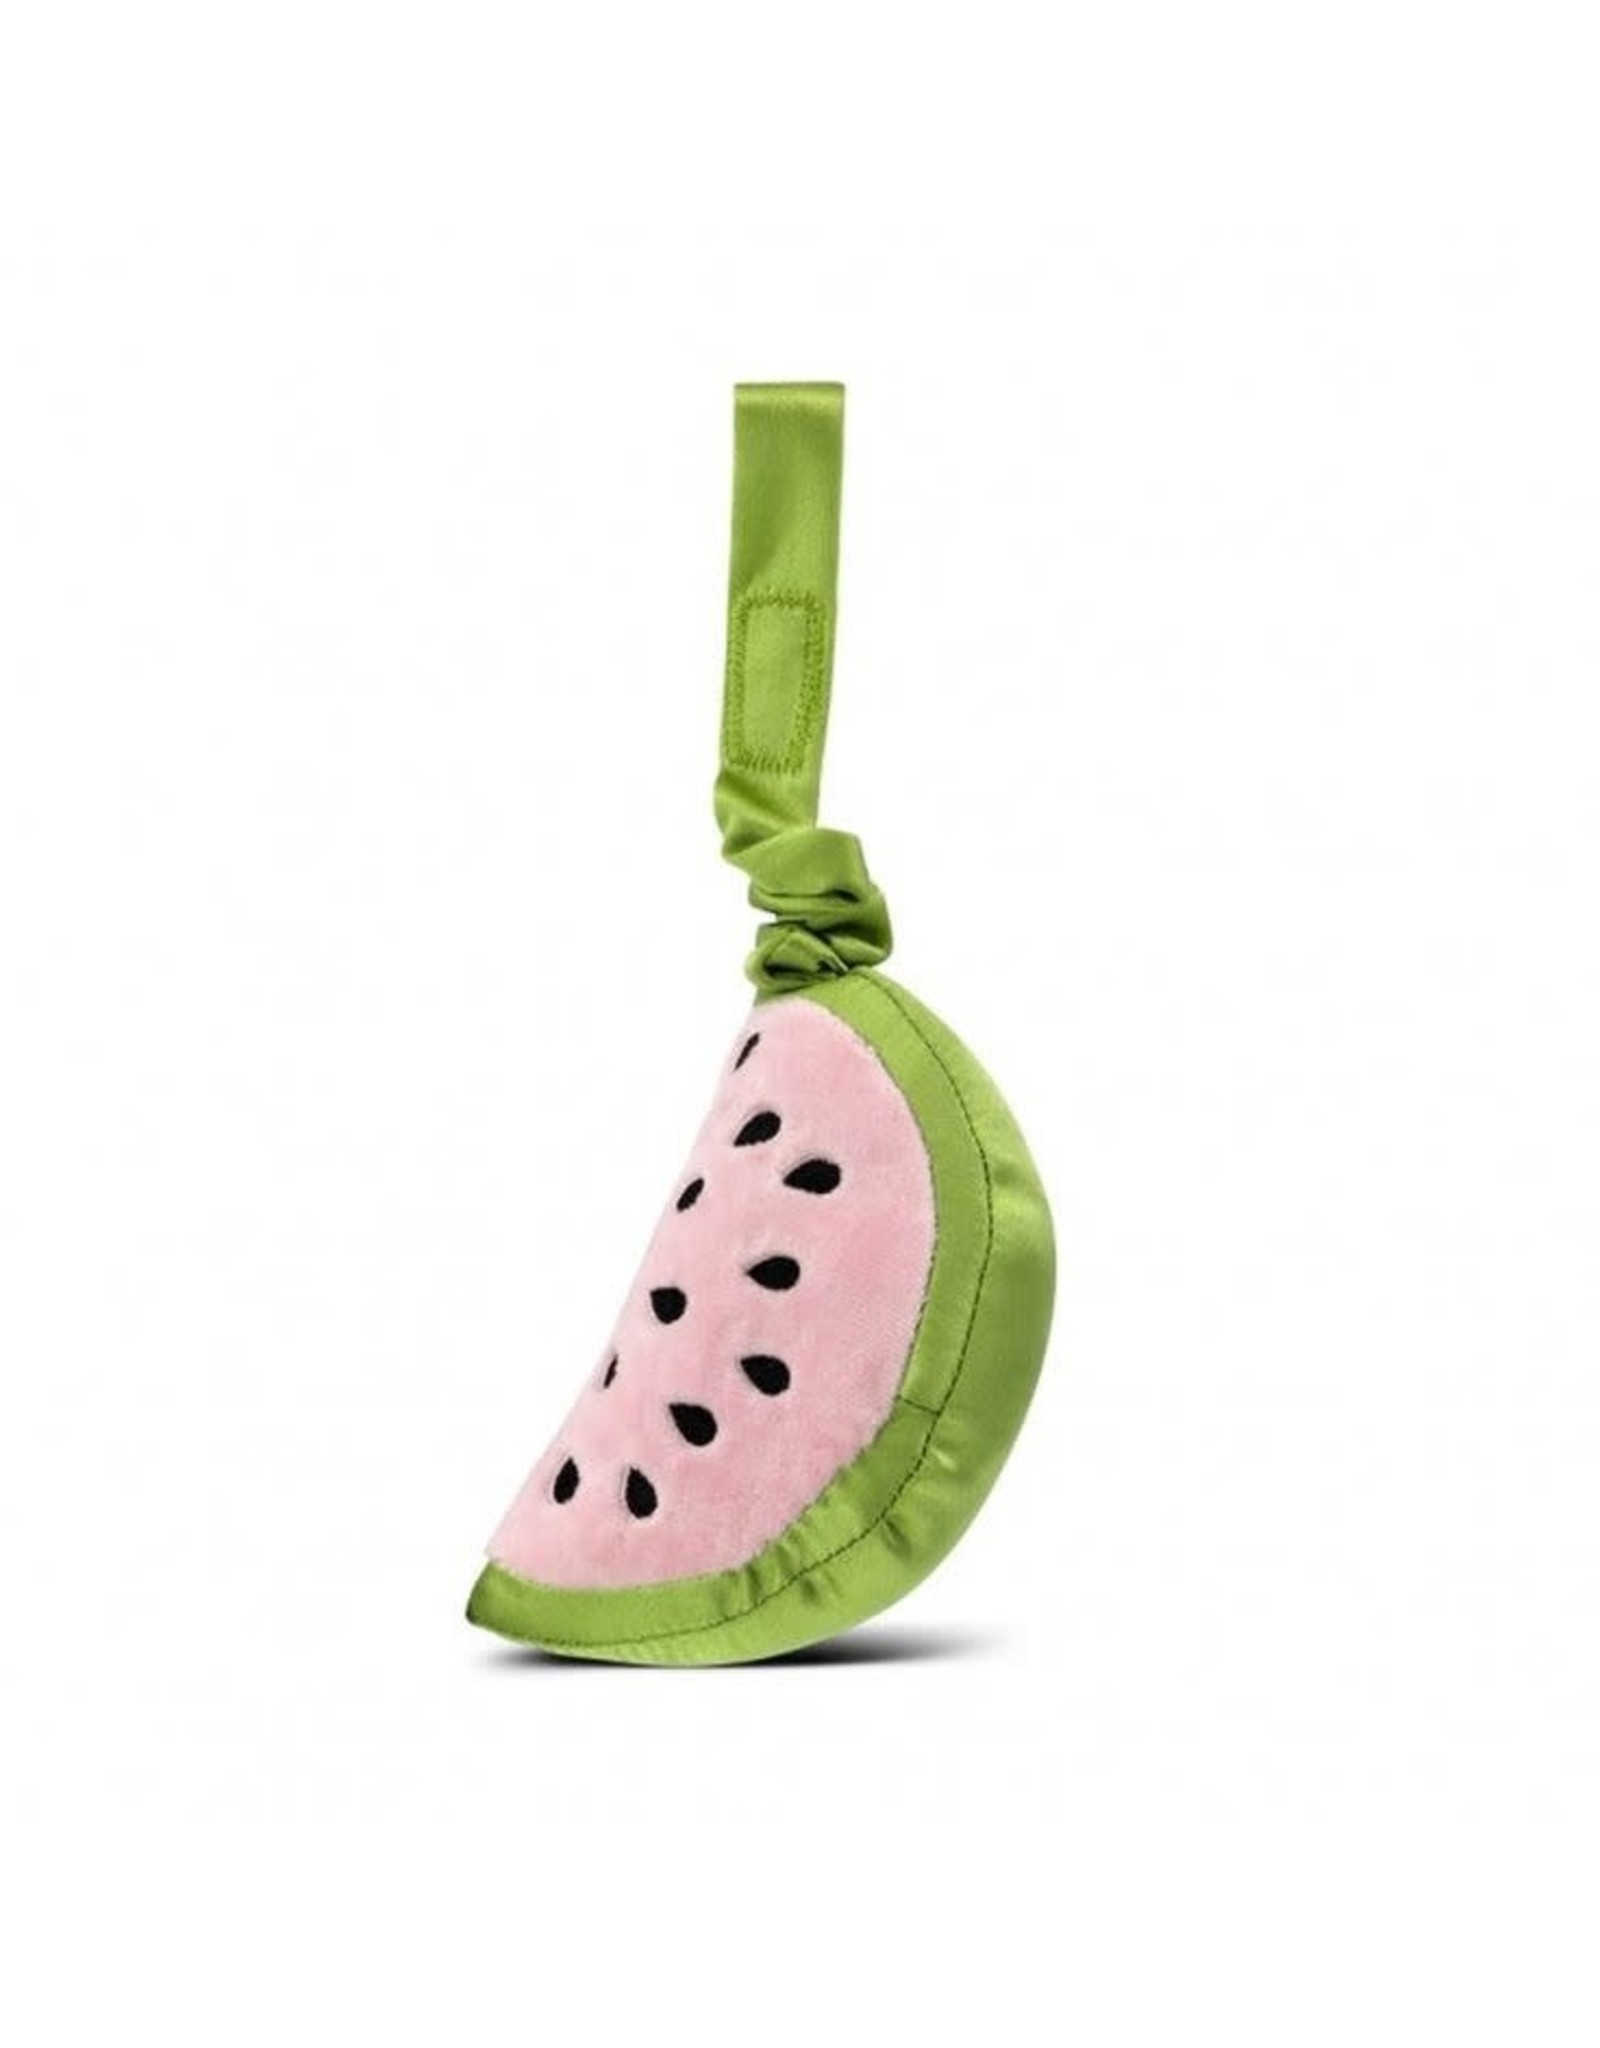 Watermelon Stroller Toy